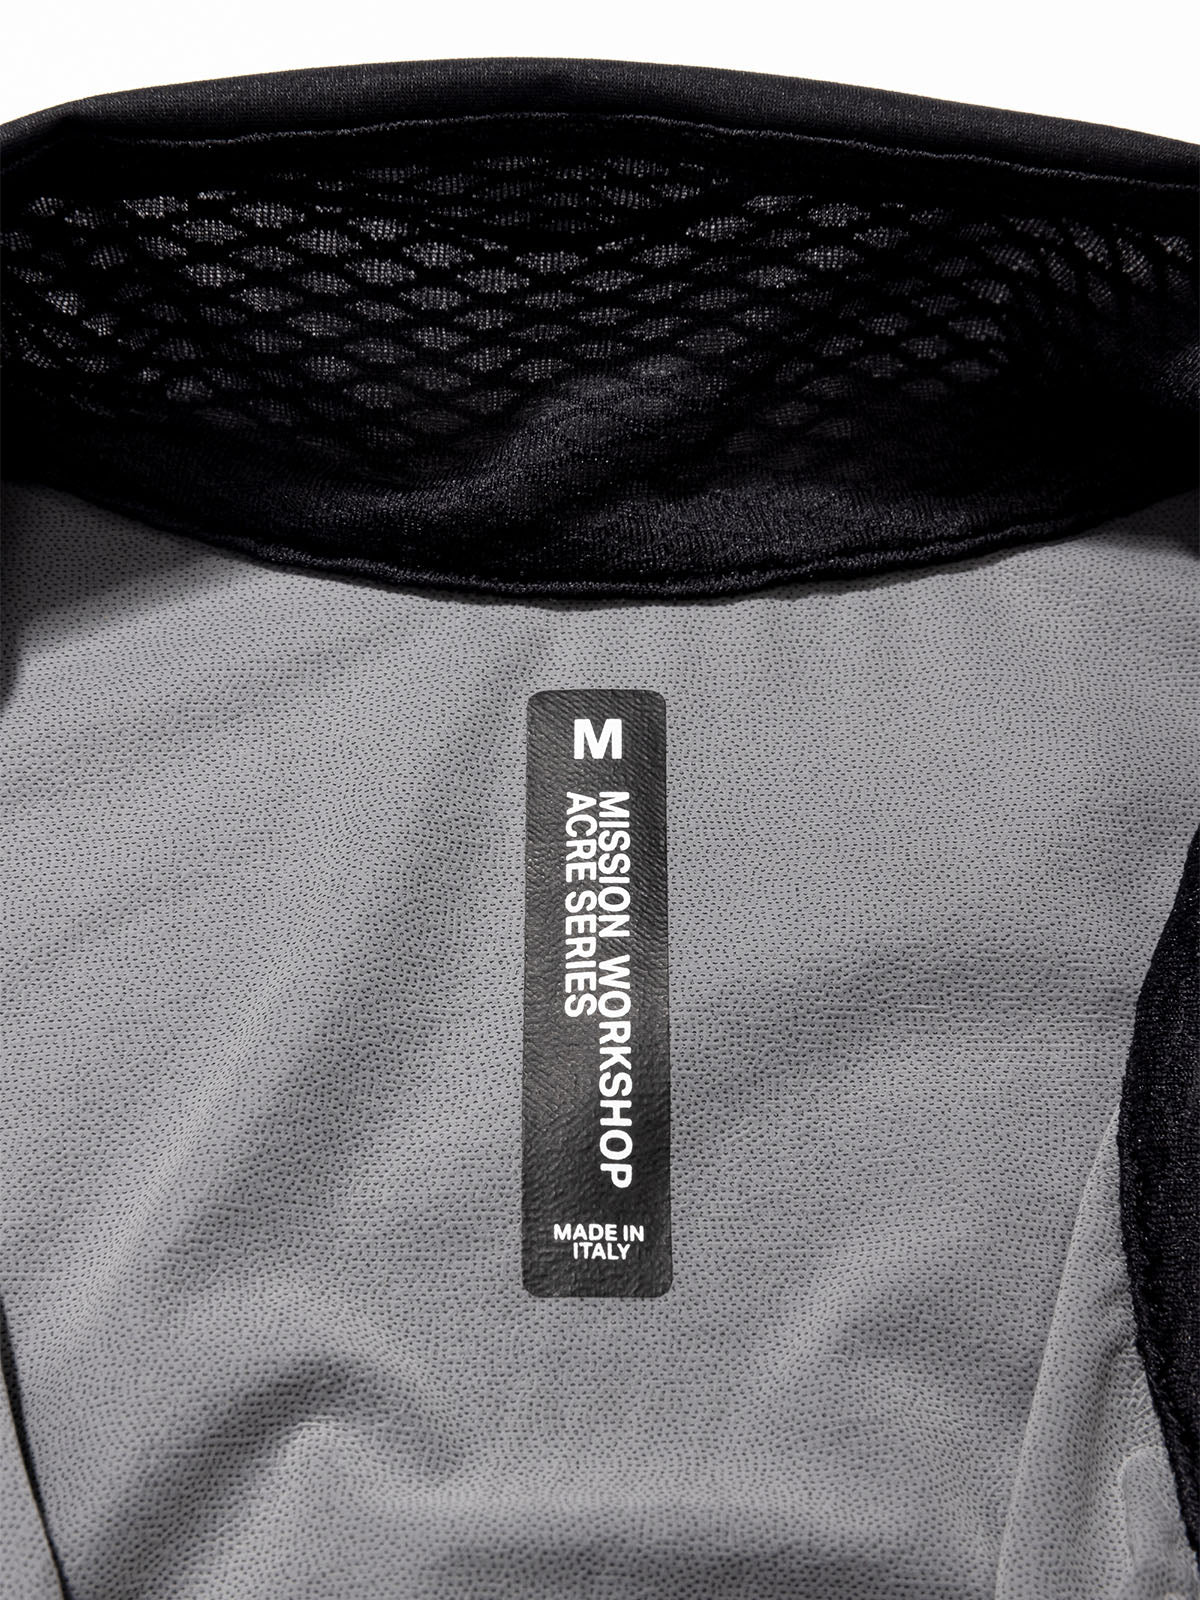 Altosphere Vest by Mission Workshop - Säänkestävät laukut ja tekniset vaatteet - San Francisco & Los Angeles - Rakennettu kestämään - ikuinen takuu